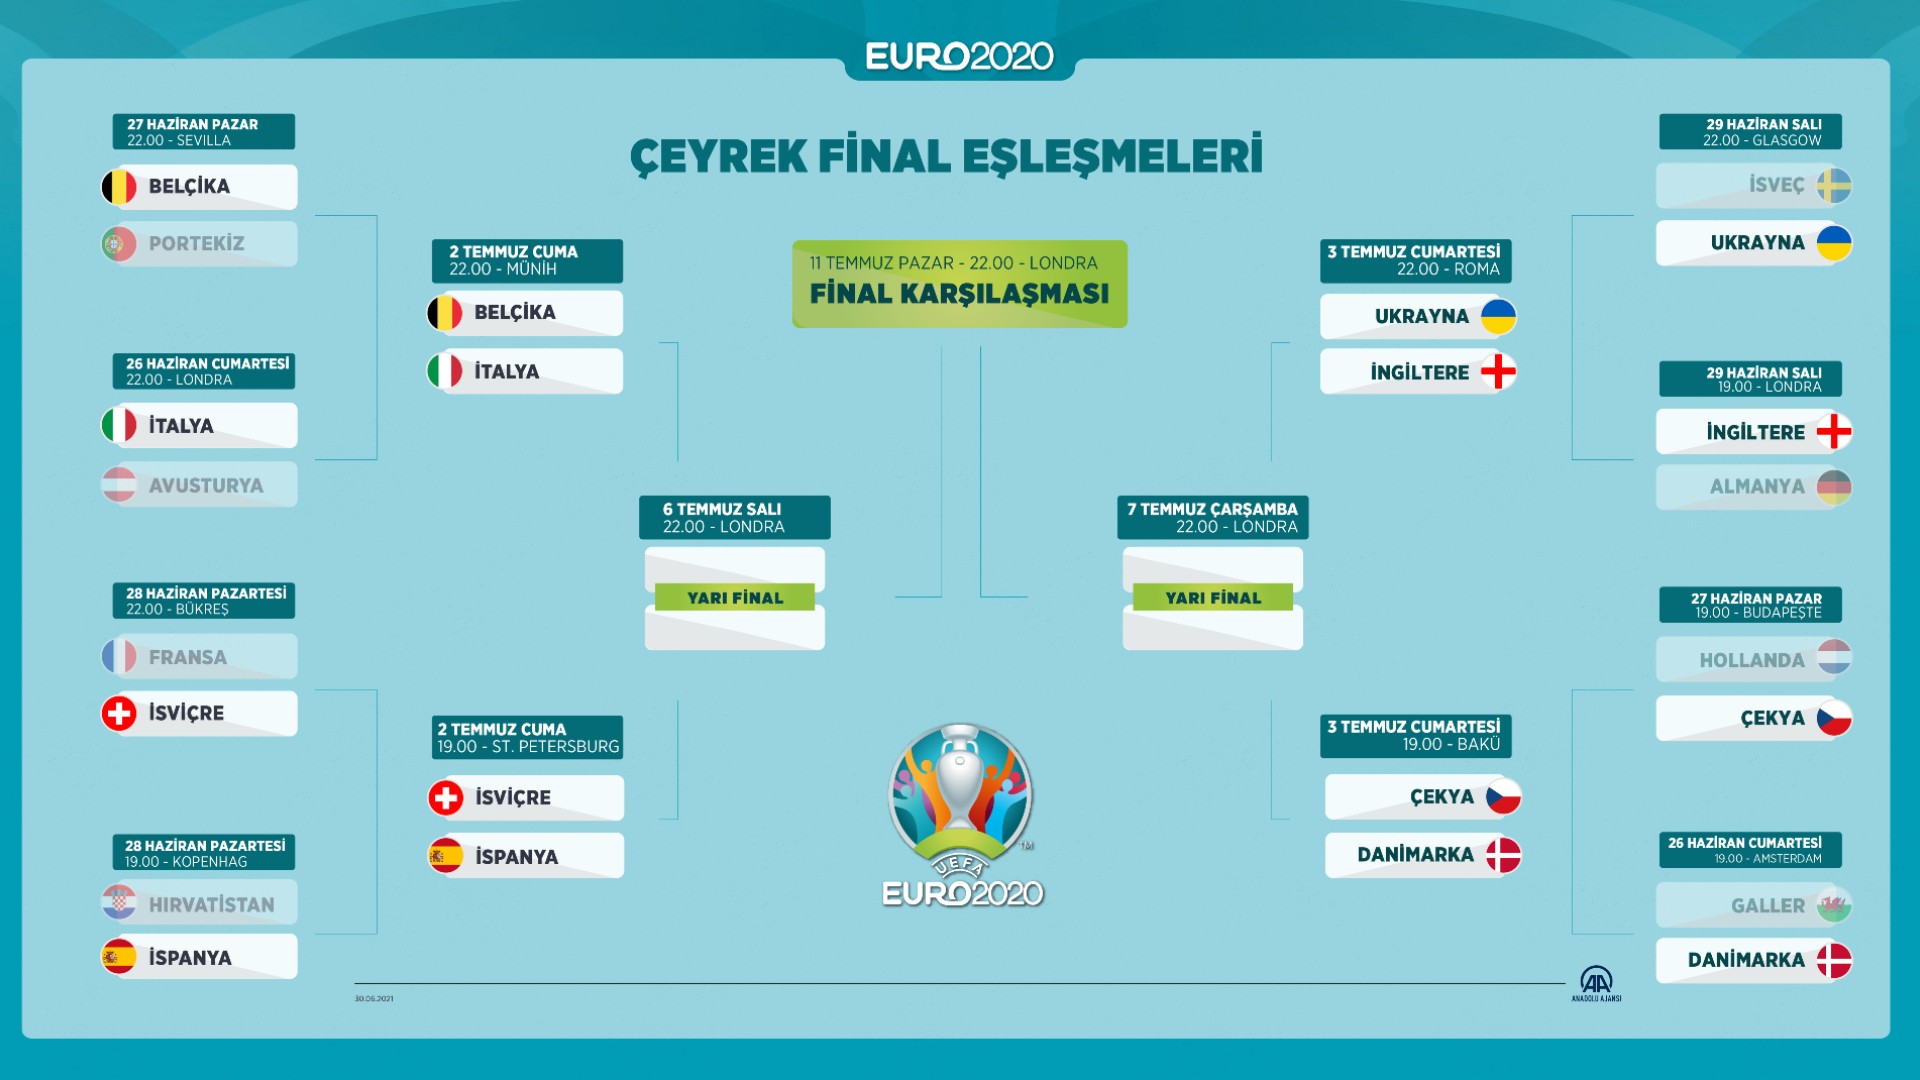 GRAFİK: EURO 2020 Çeyrek Final Eşleşmeleri